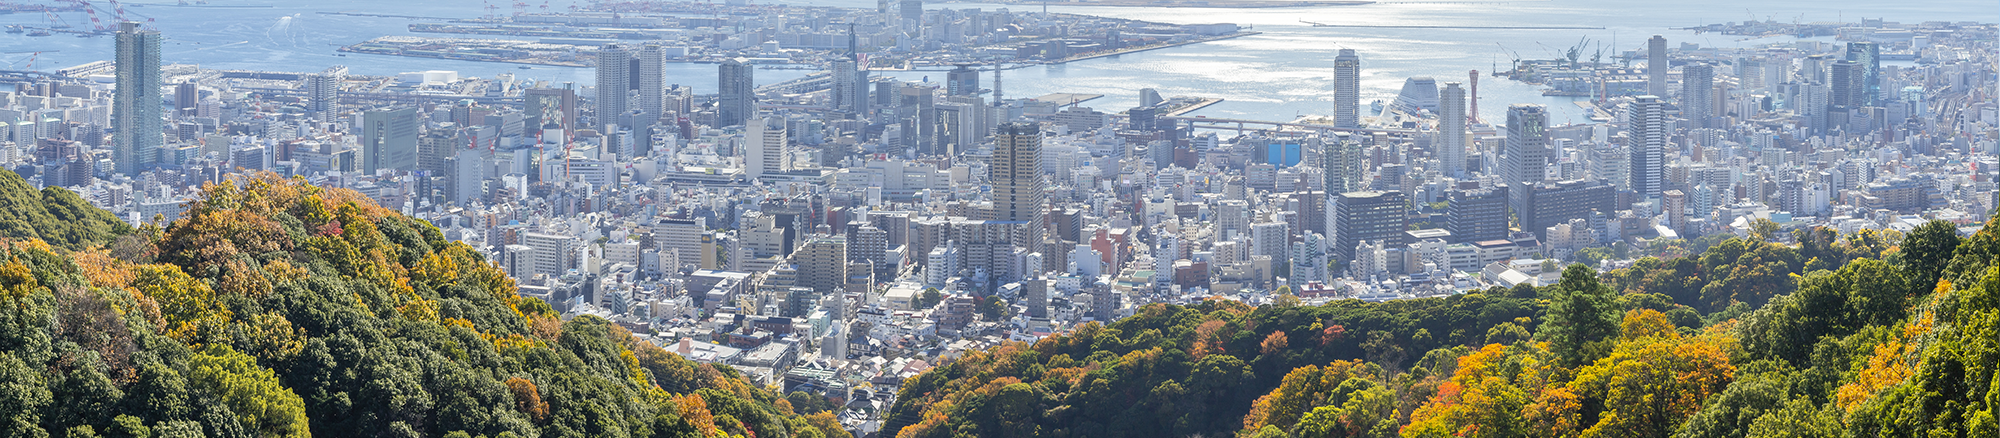 神戸、地域を活性化する事で日本が変わる